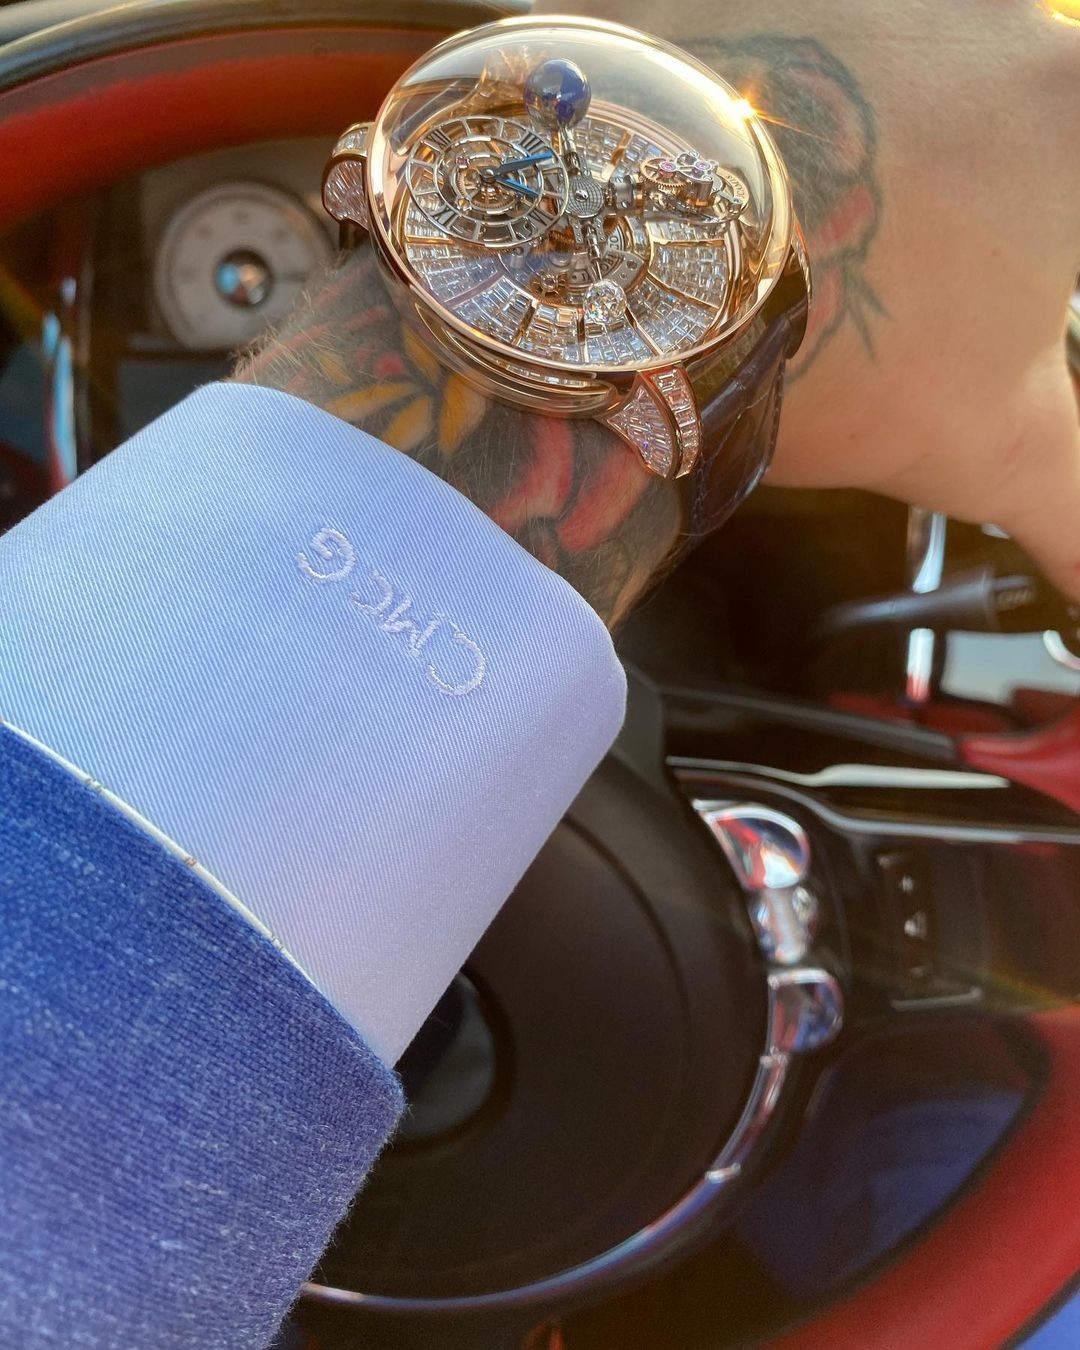 Incrustado de diamantes, novo relógio de Conor McGregor custa 1 milhão de dólares (Foto: Reprodução/Instagram)